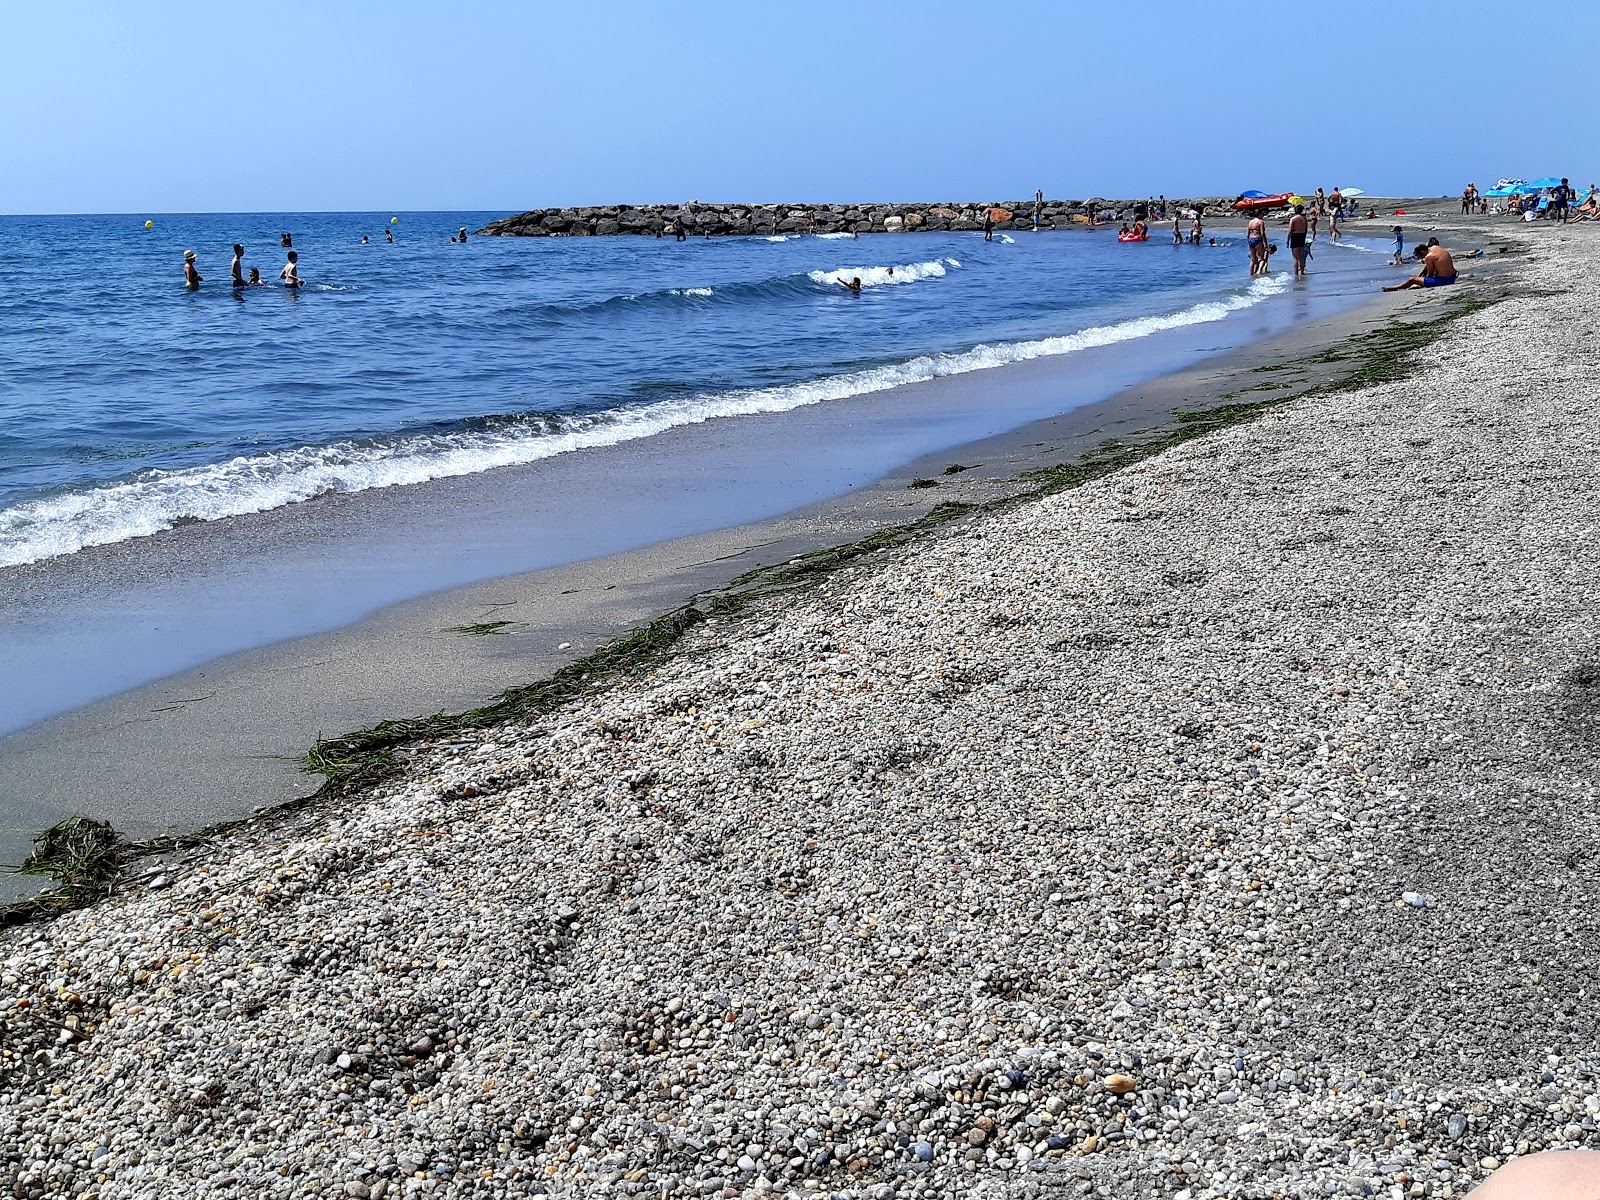 Foto af Playa Costa Cabana - populært sted blandt afslapningskendere